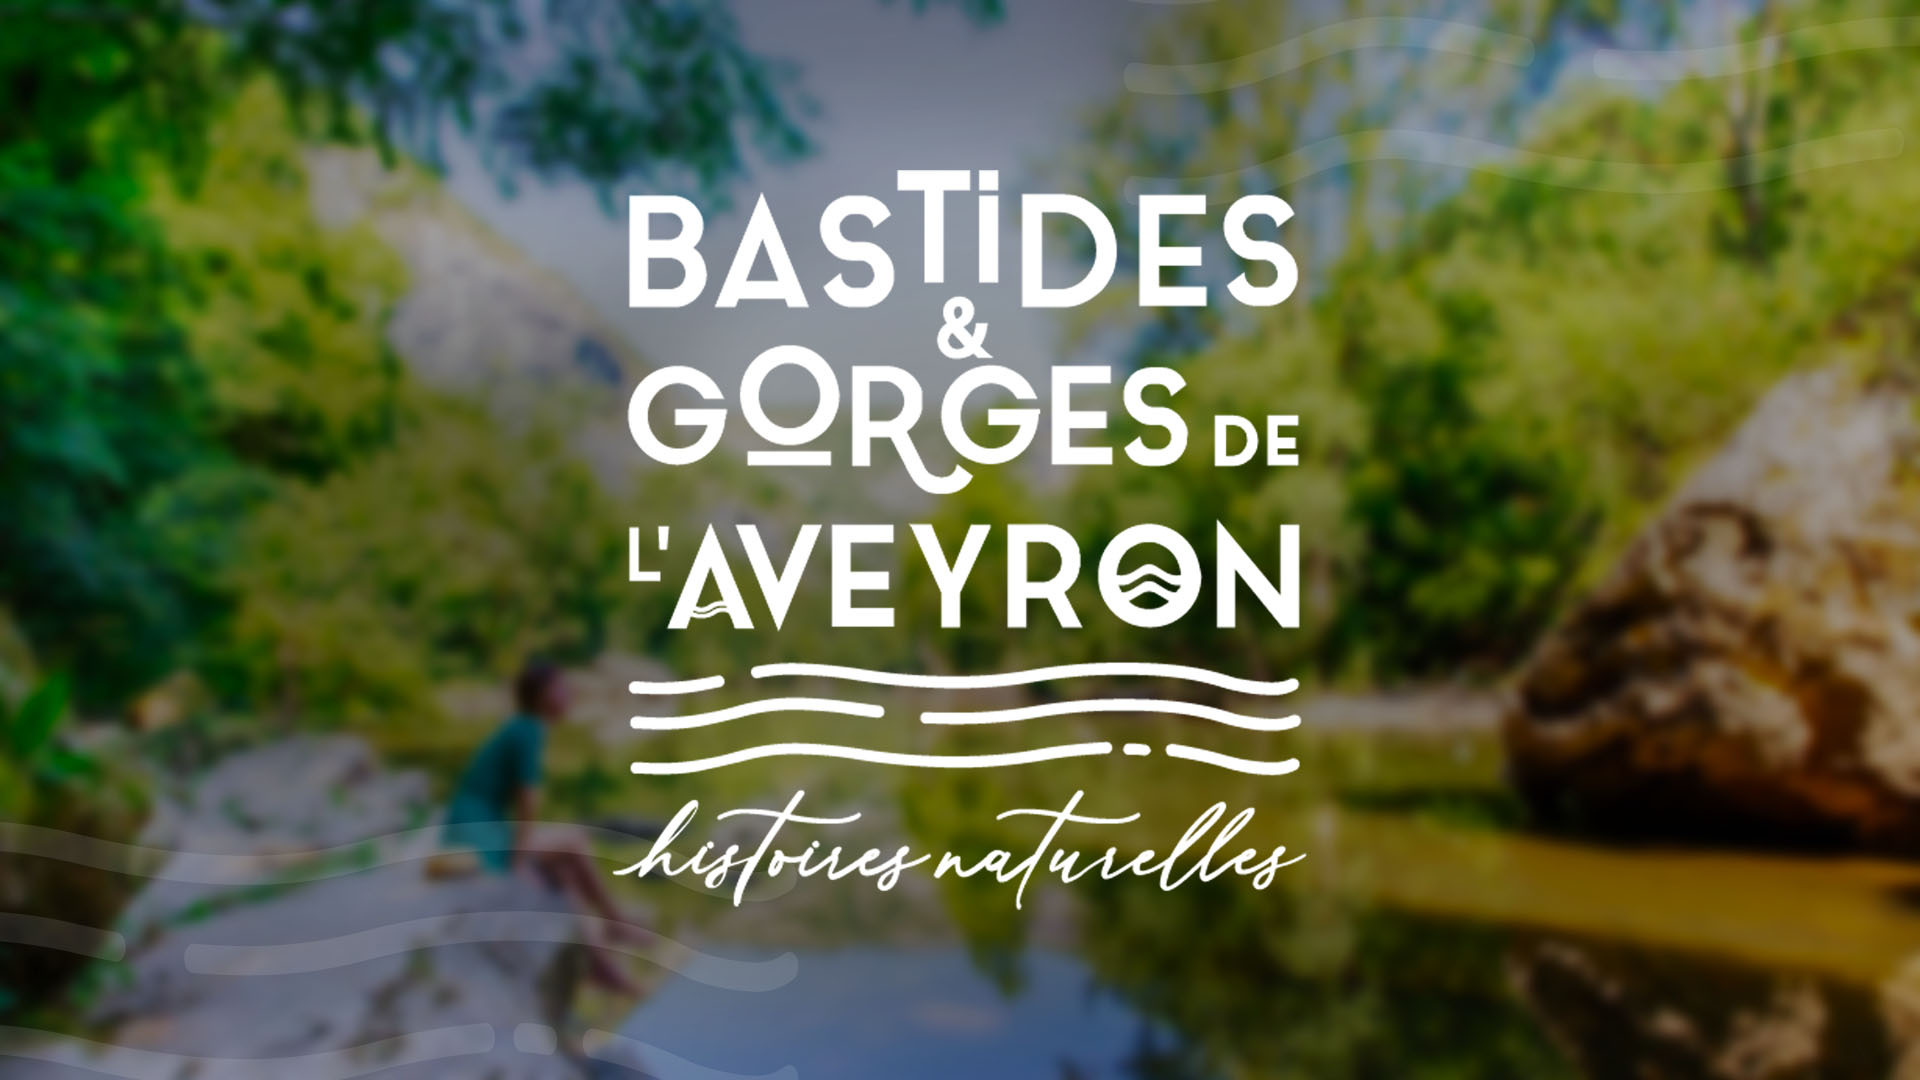 Bastidas y Gargantas de Aveyron